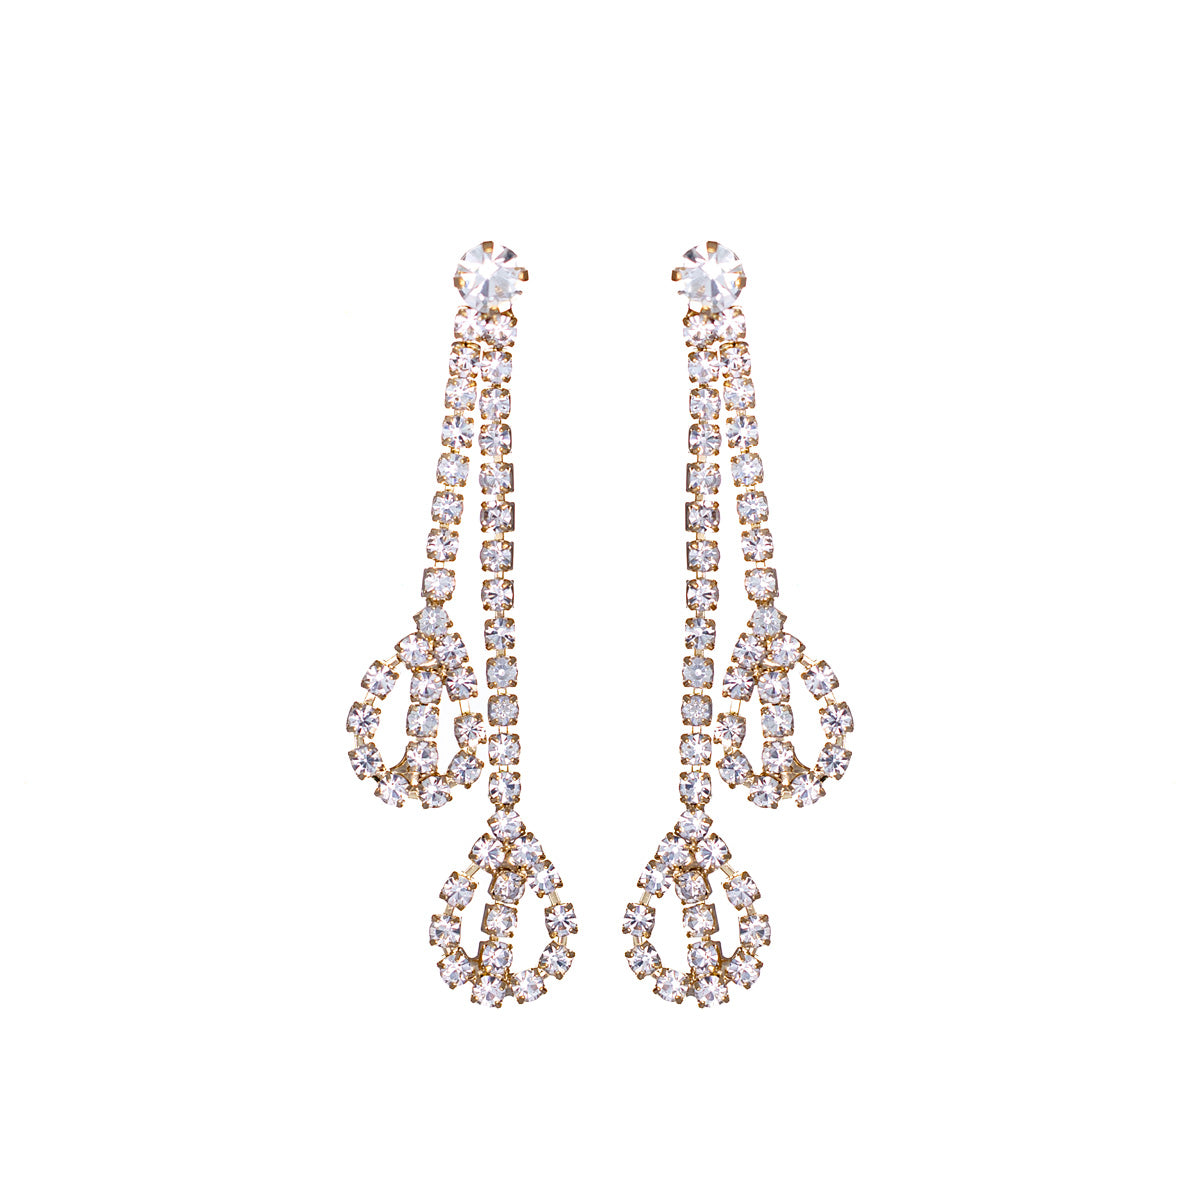 Lacy rhinestone festive necklace + earrings